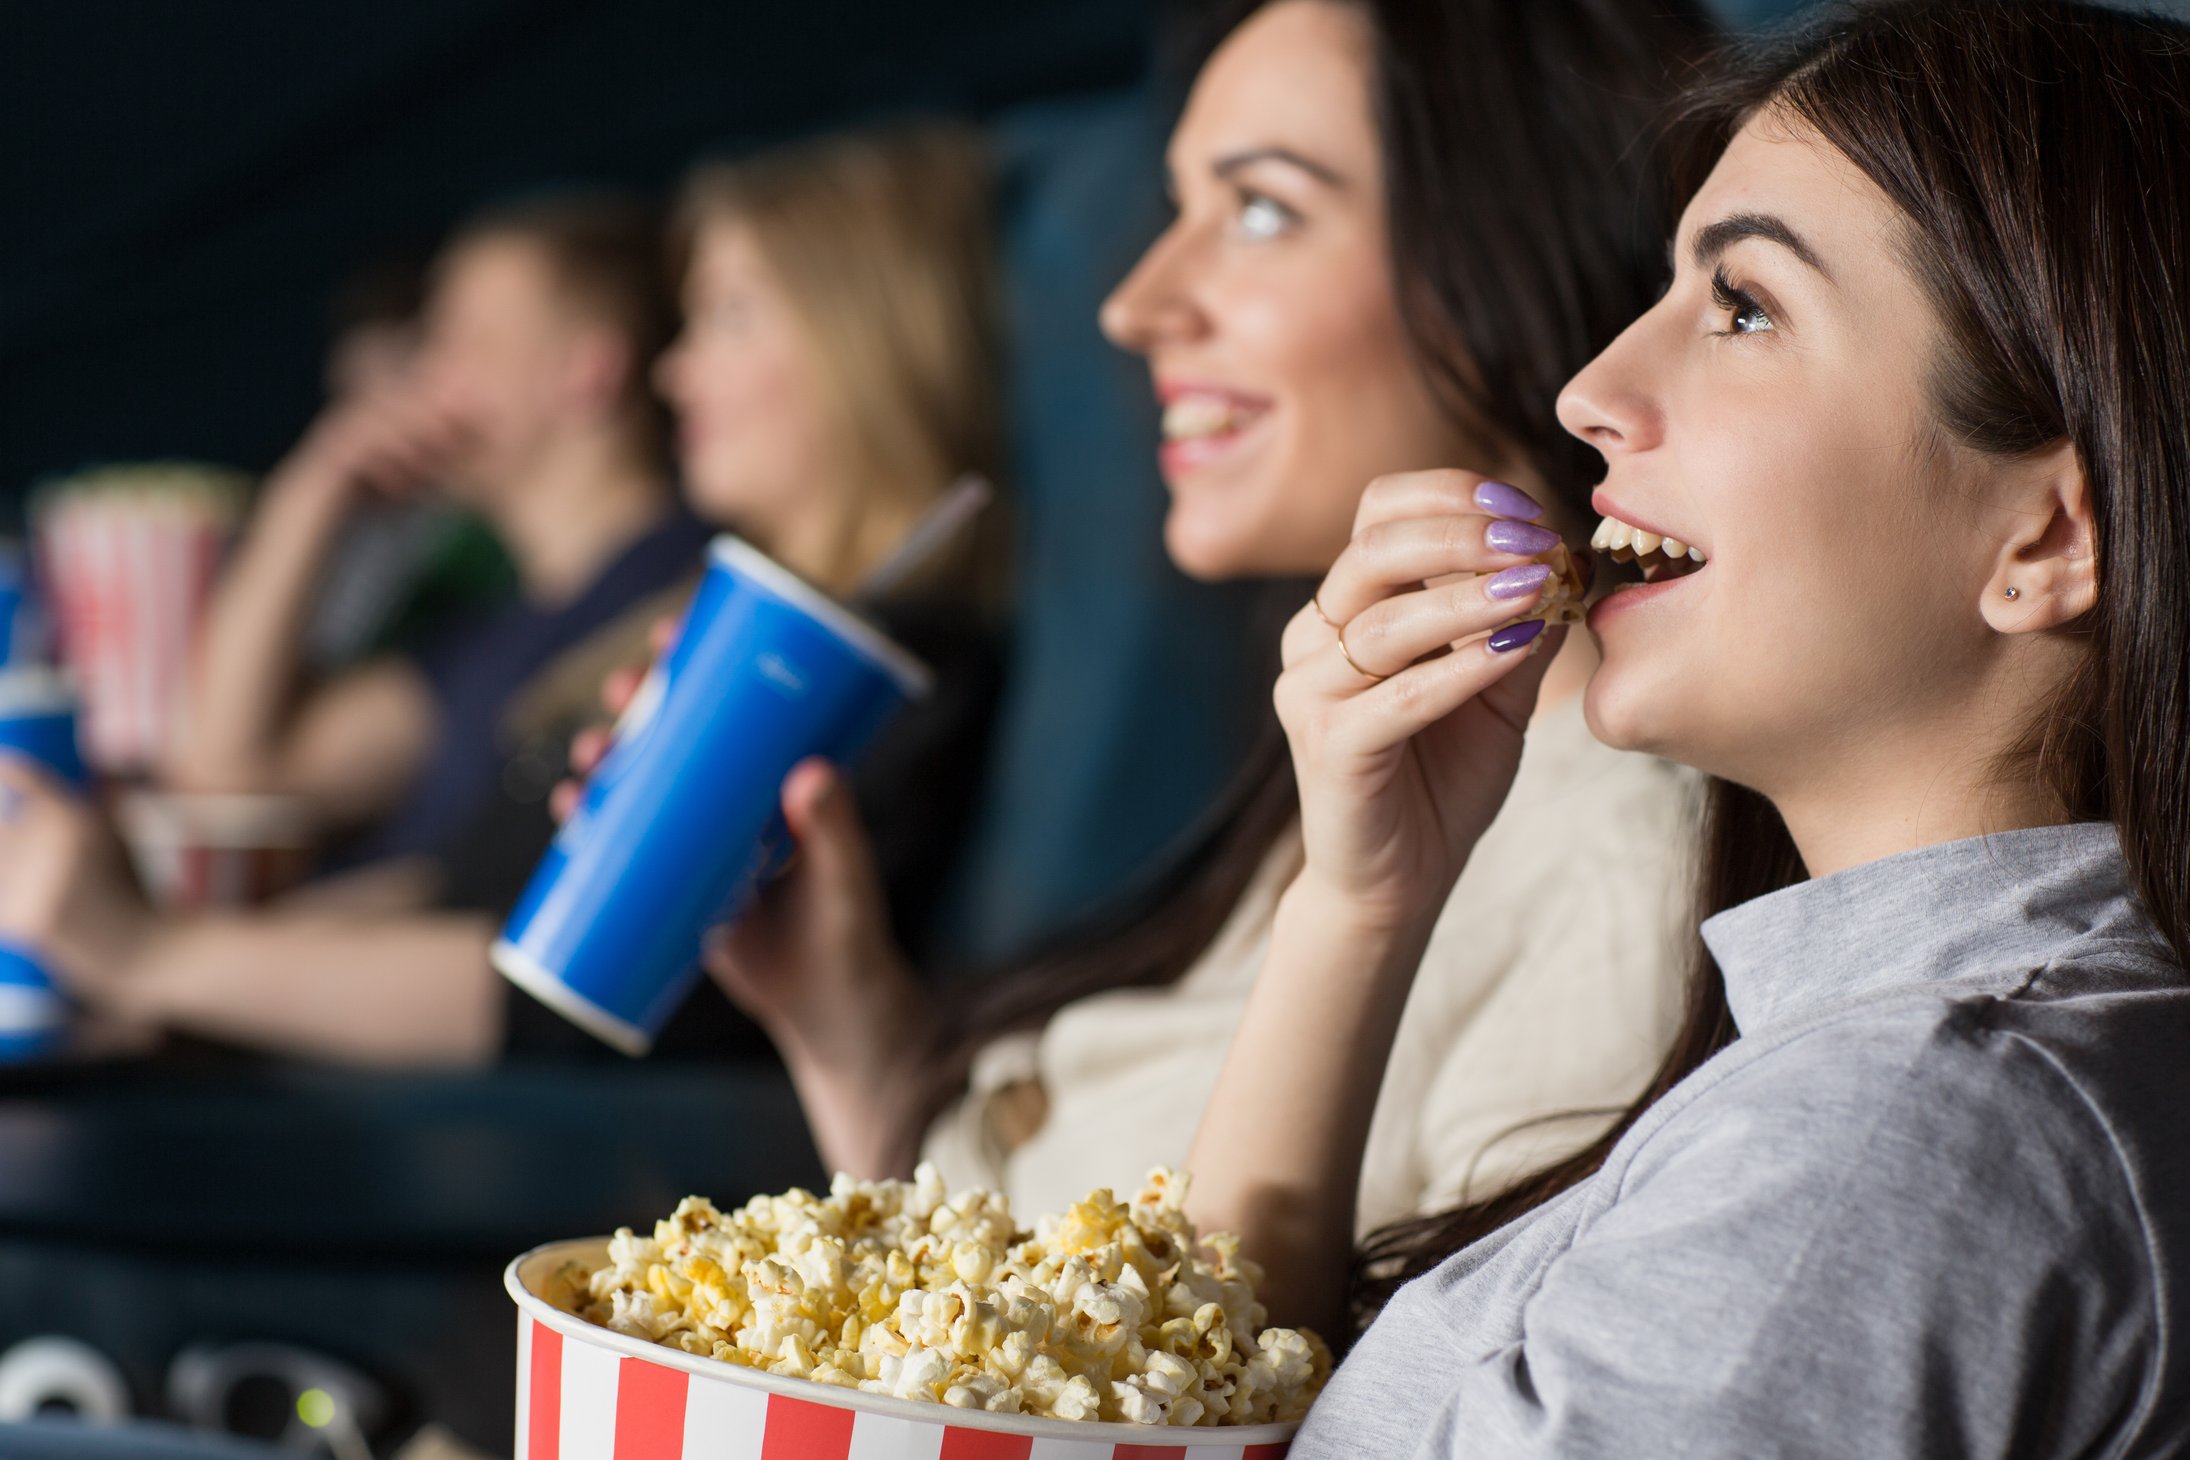 Friends watch a movie. Подруги в кинотеатре. Подруги едят попкорн. Девушки подруги с попкорном. Девушка с попкорном в кинотеатре.